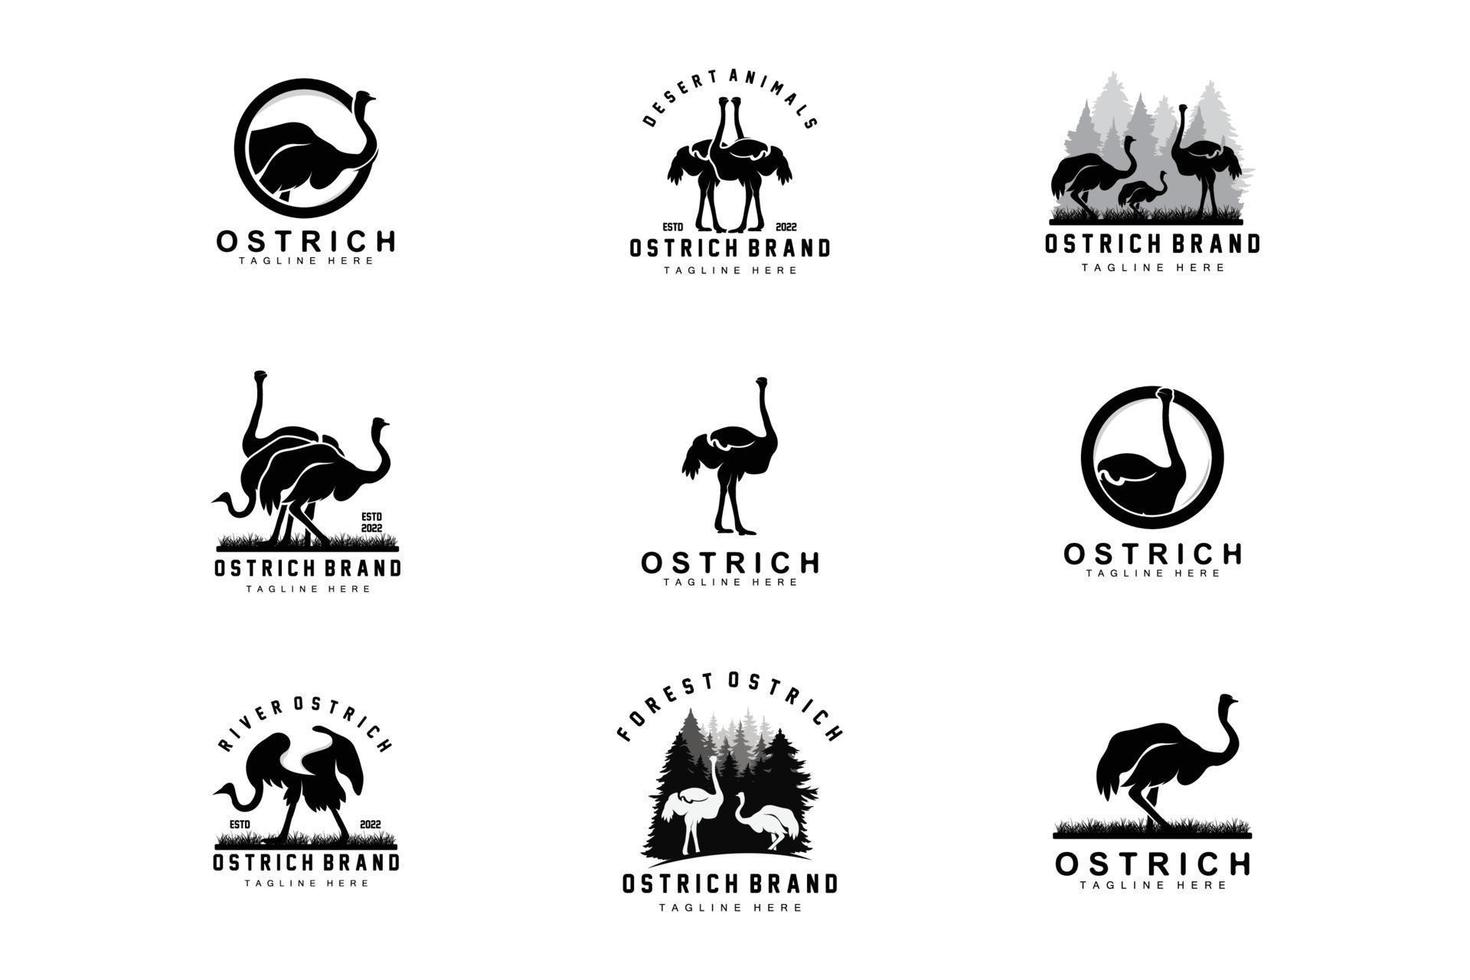 diseño de logotipo de avestruz, ilustración de animales del desierto, vida en el bosque, producto de marca de camello vectorial vector